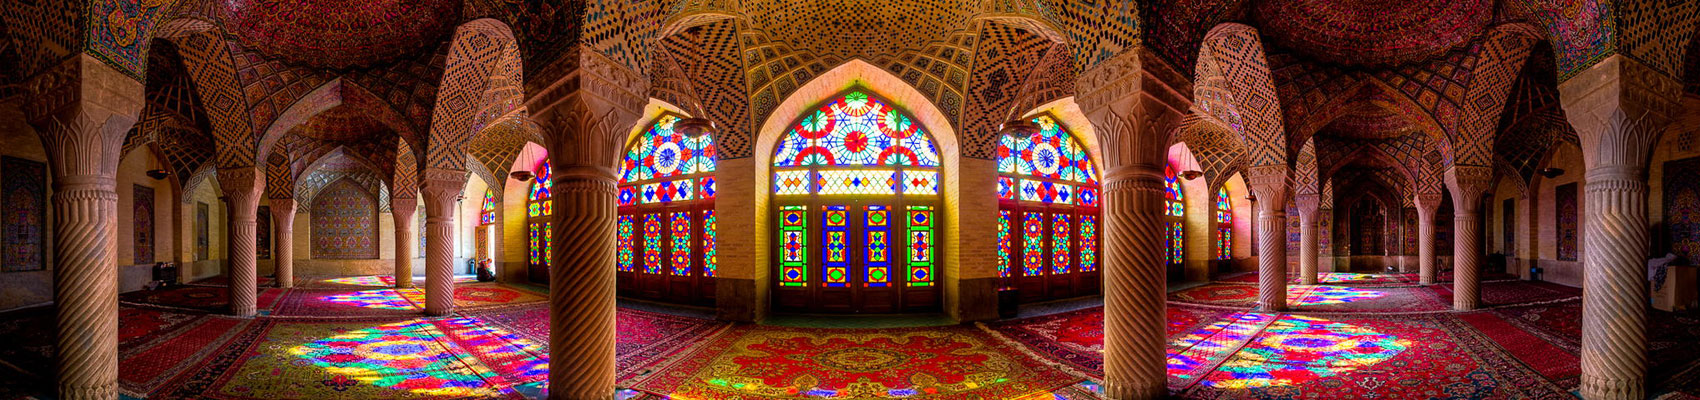 tour a Shiraz, Isfahan, Yaz (16 días)